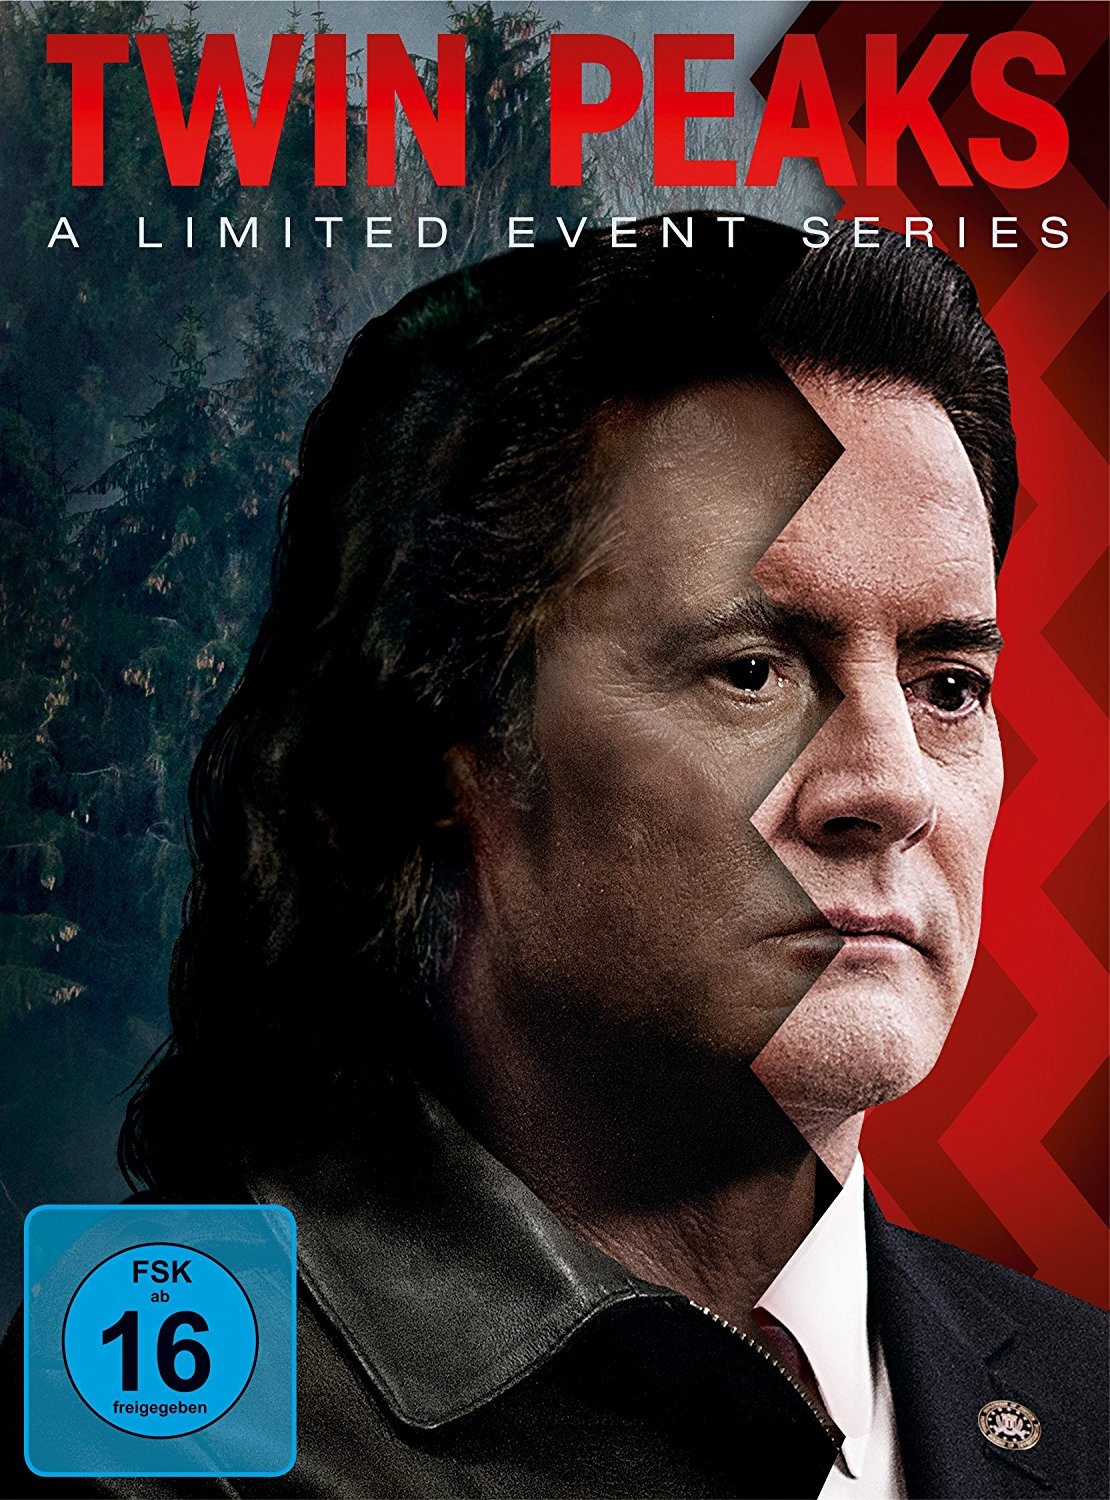 dvd 03 18 Twin Peaks Series new